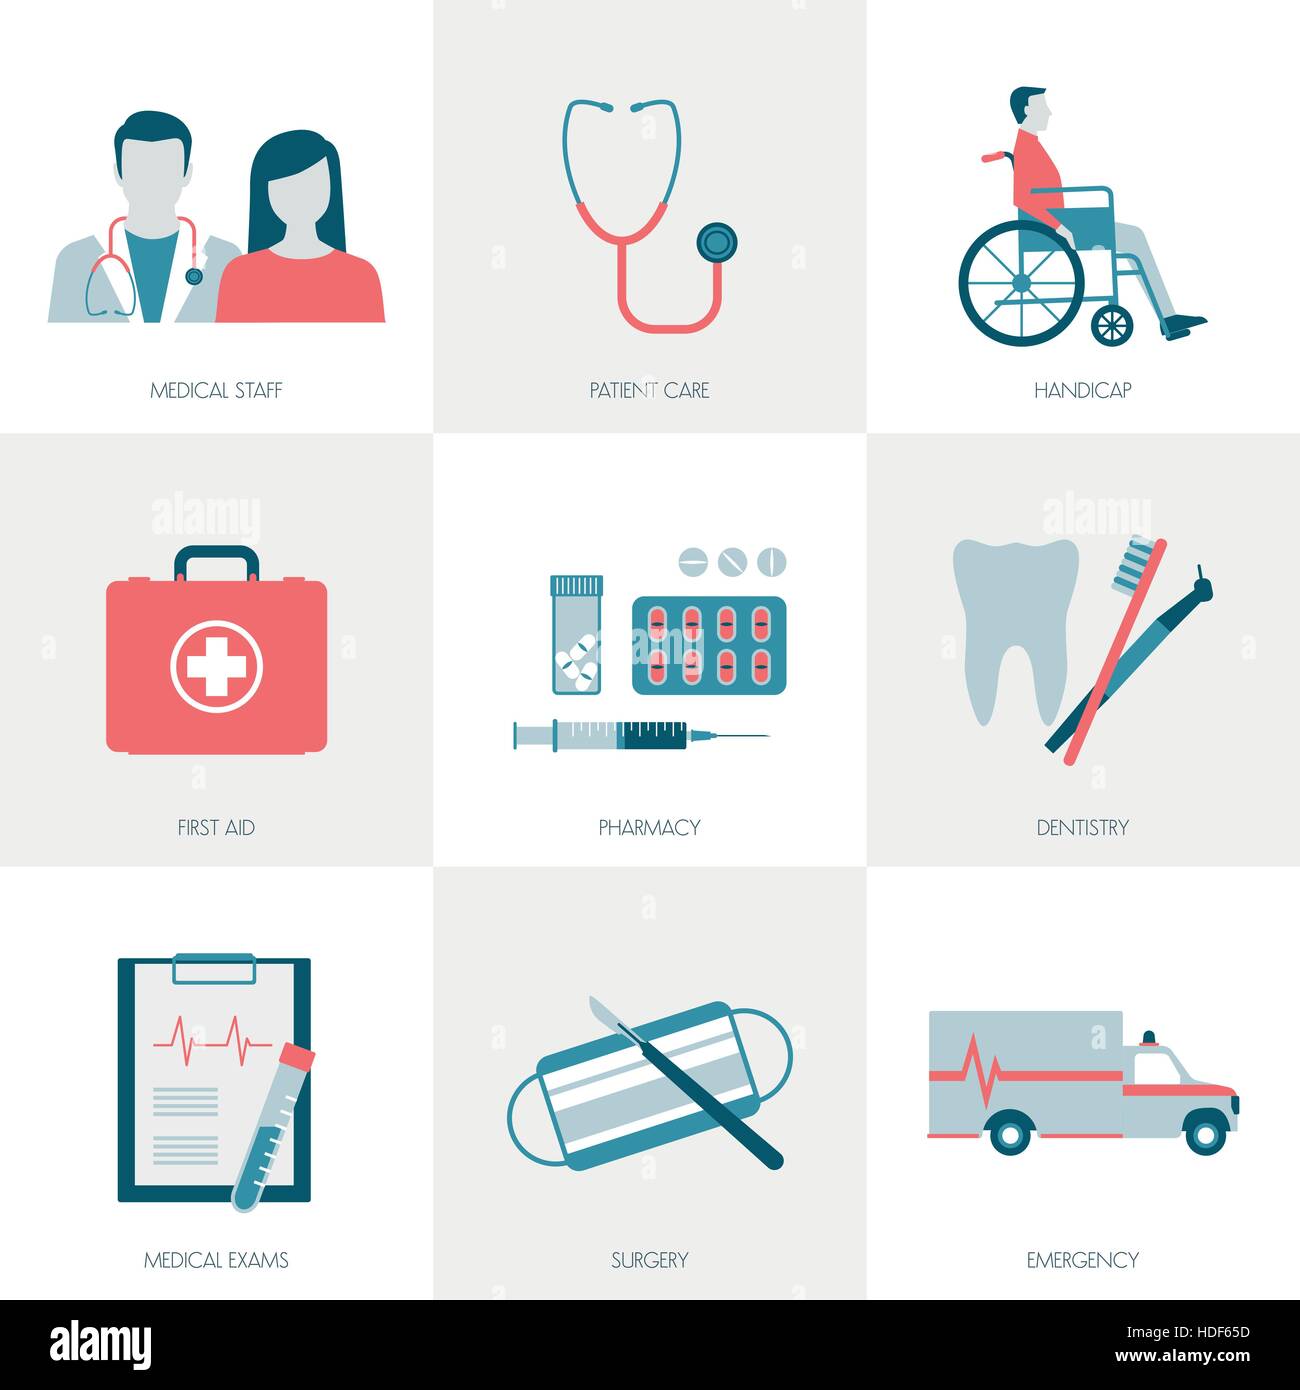 Medizin, Gesundheitswesen, Patienten und Ärzte Icons set Stock Vektor